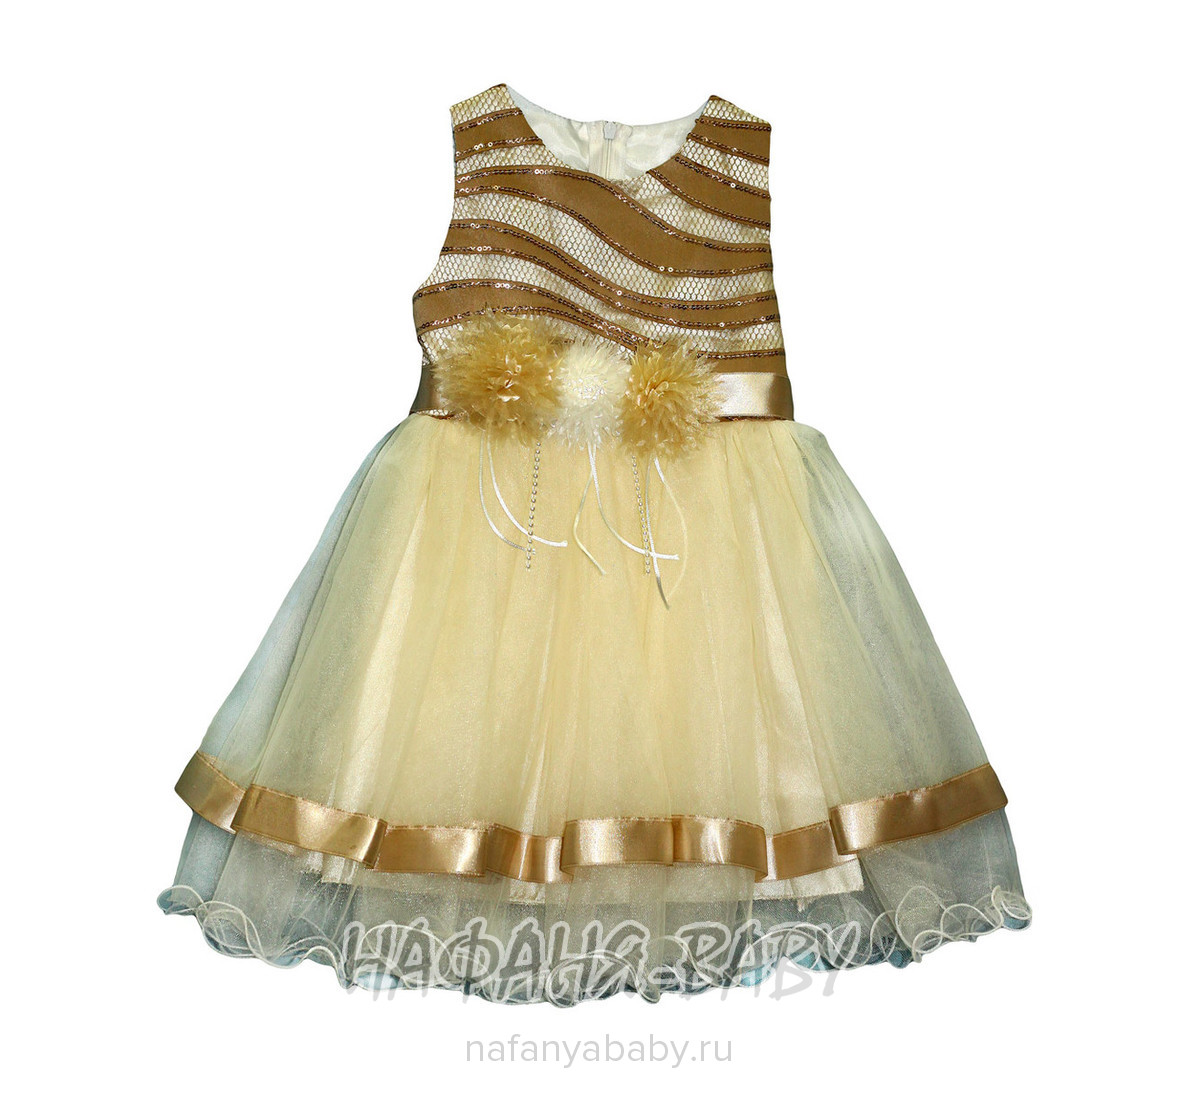 Нарядное платье для малышки YES AGE, купить в интернет магазине Нафаня. арт: 2800.